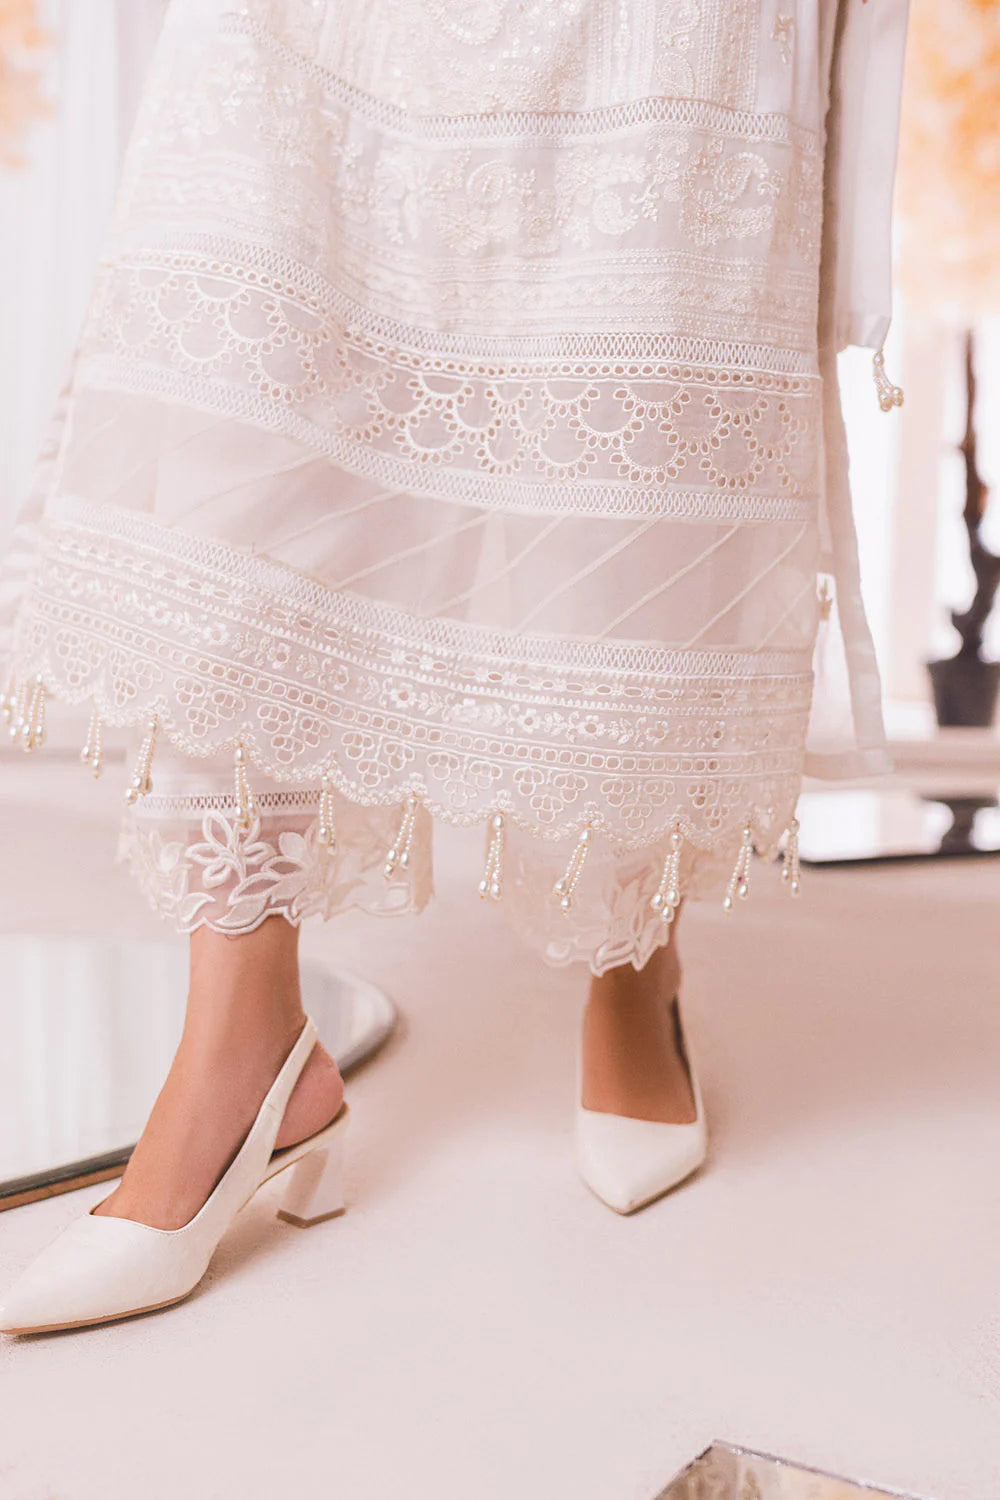 Azure Designer Luxe Embroidered Jasmine 3 Piece Wedding Outfit - Desi Posh